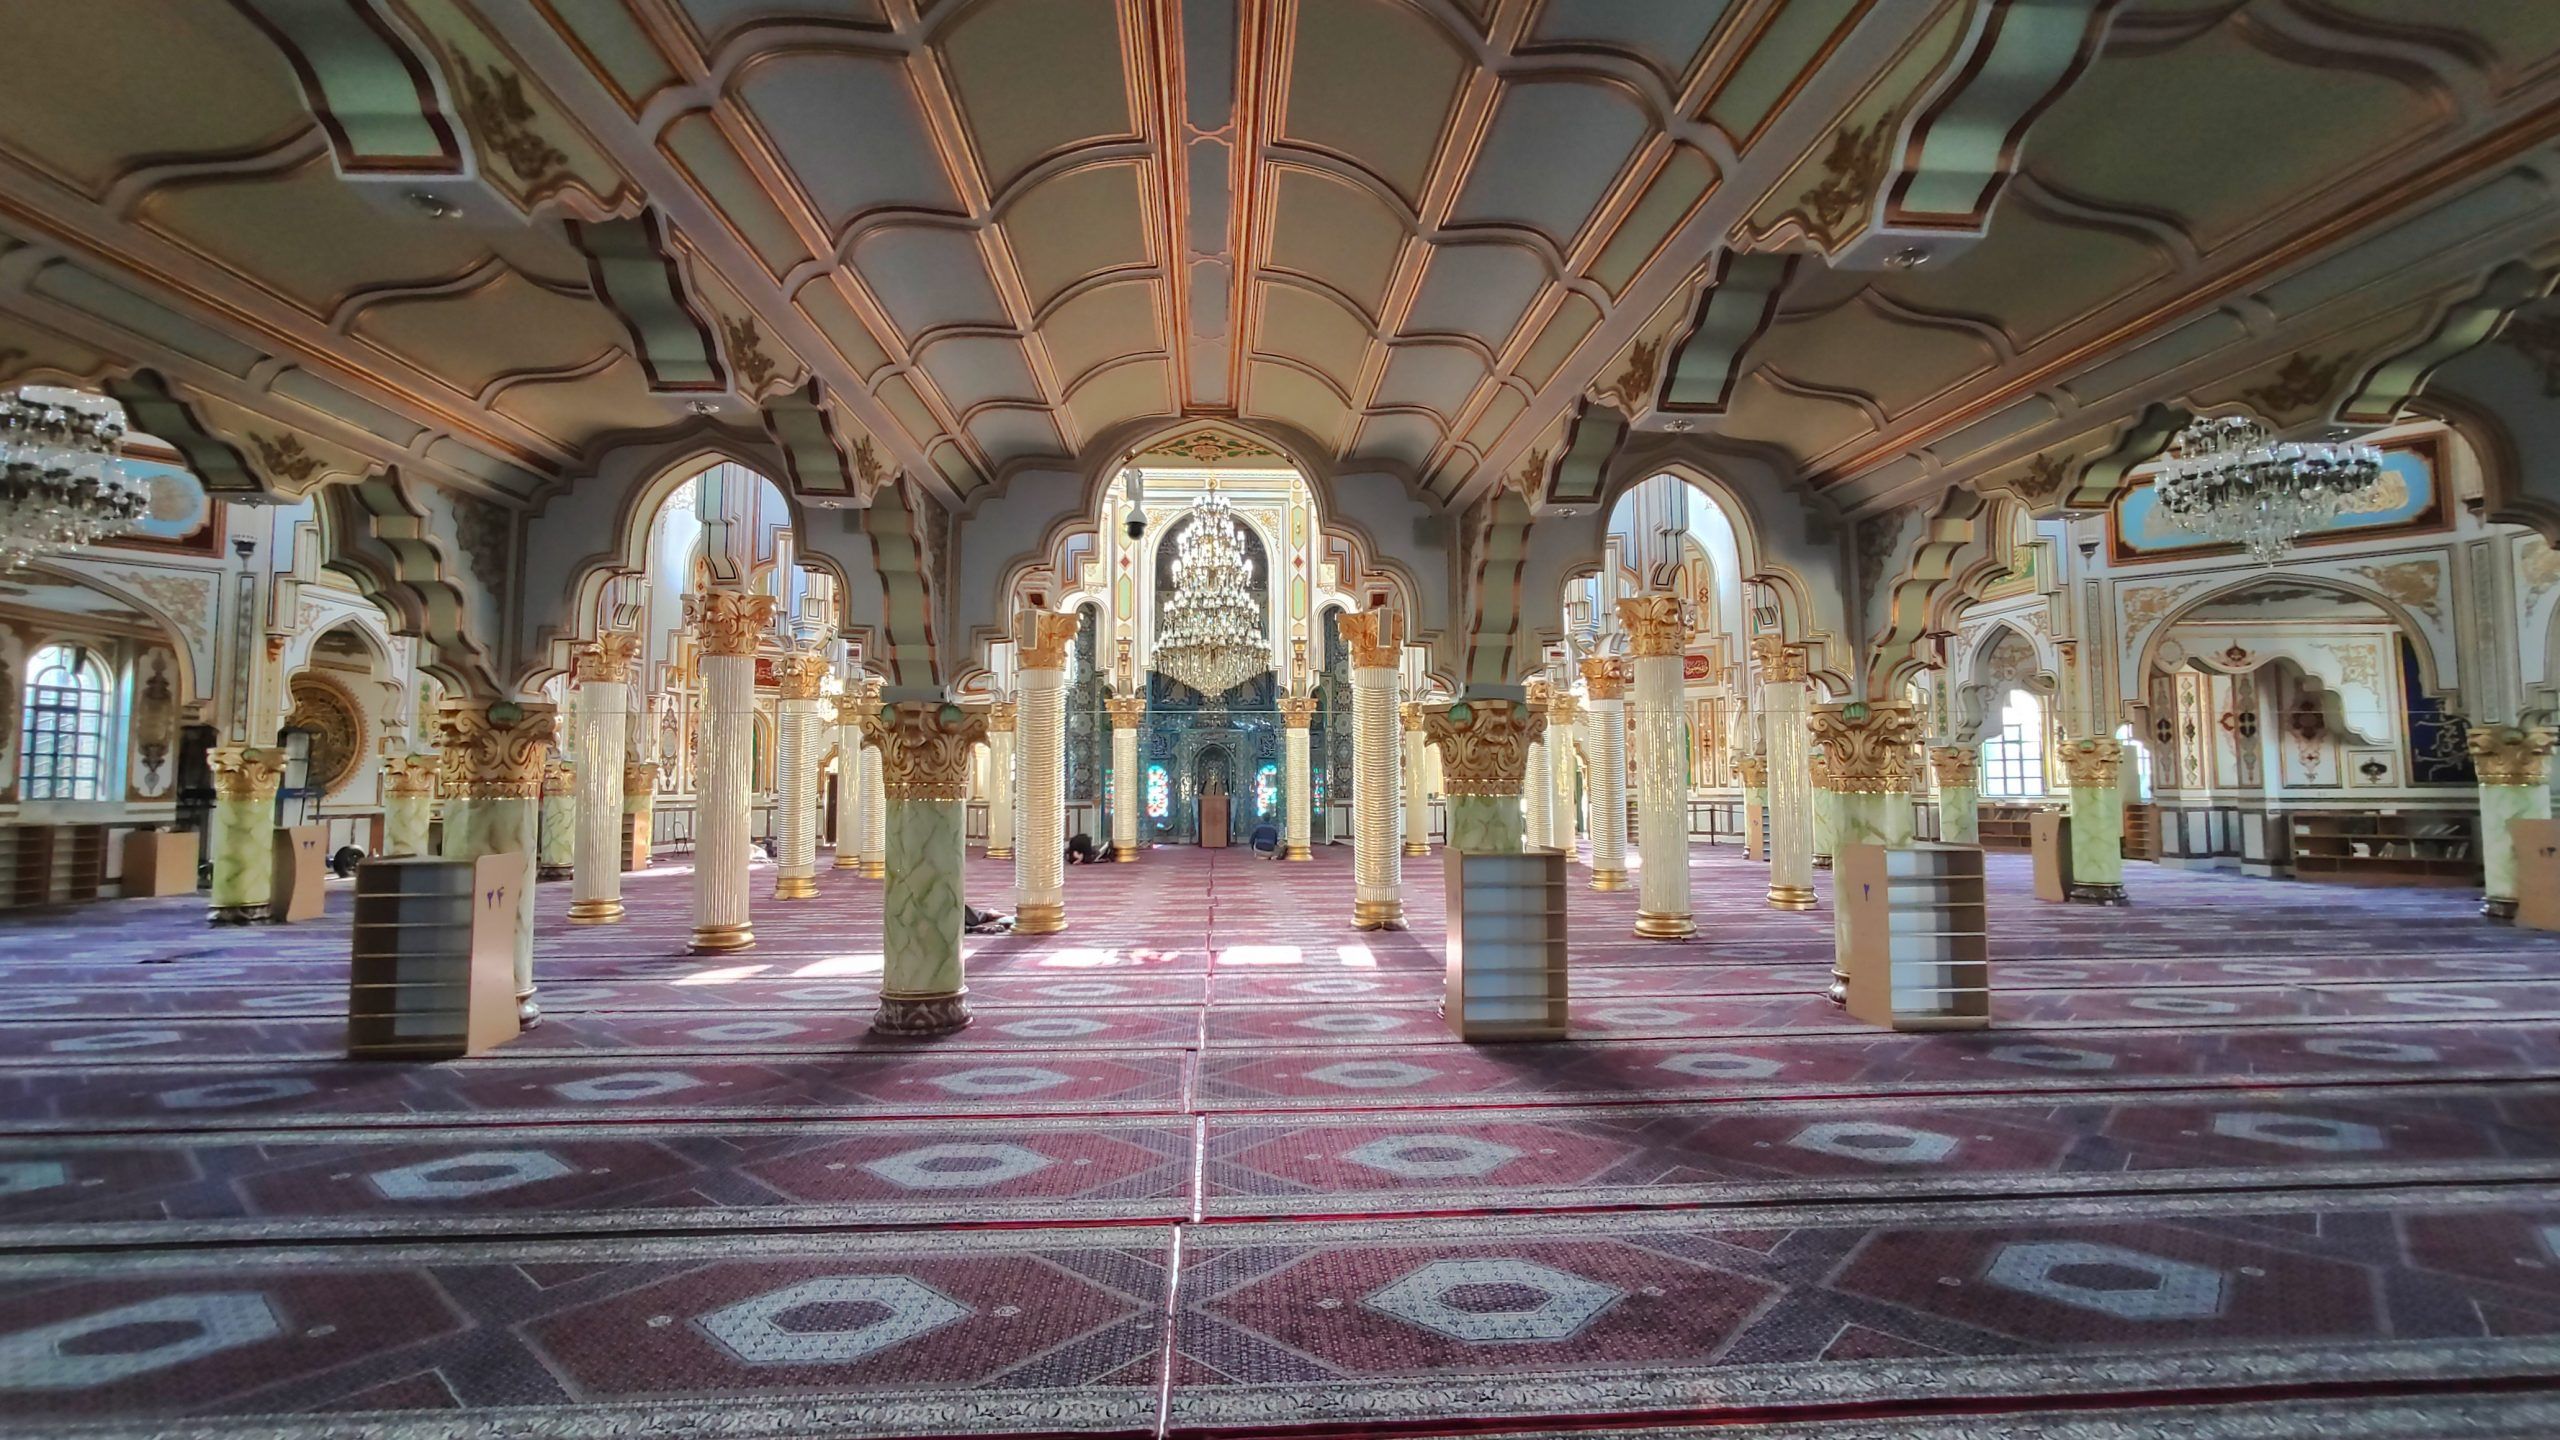 Shafei Mosque